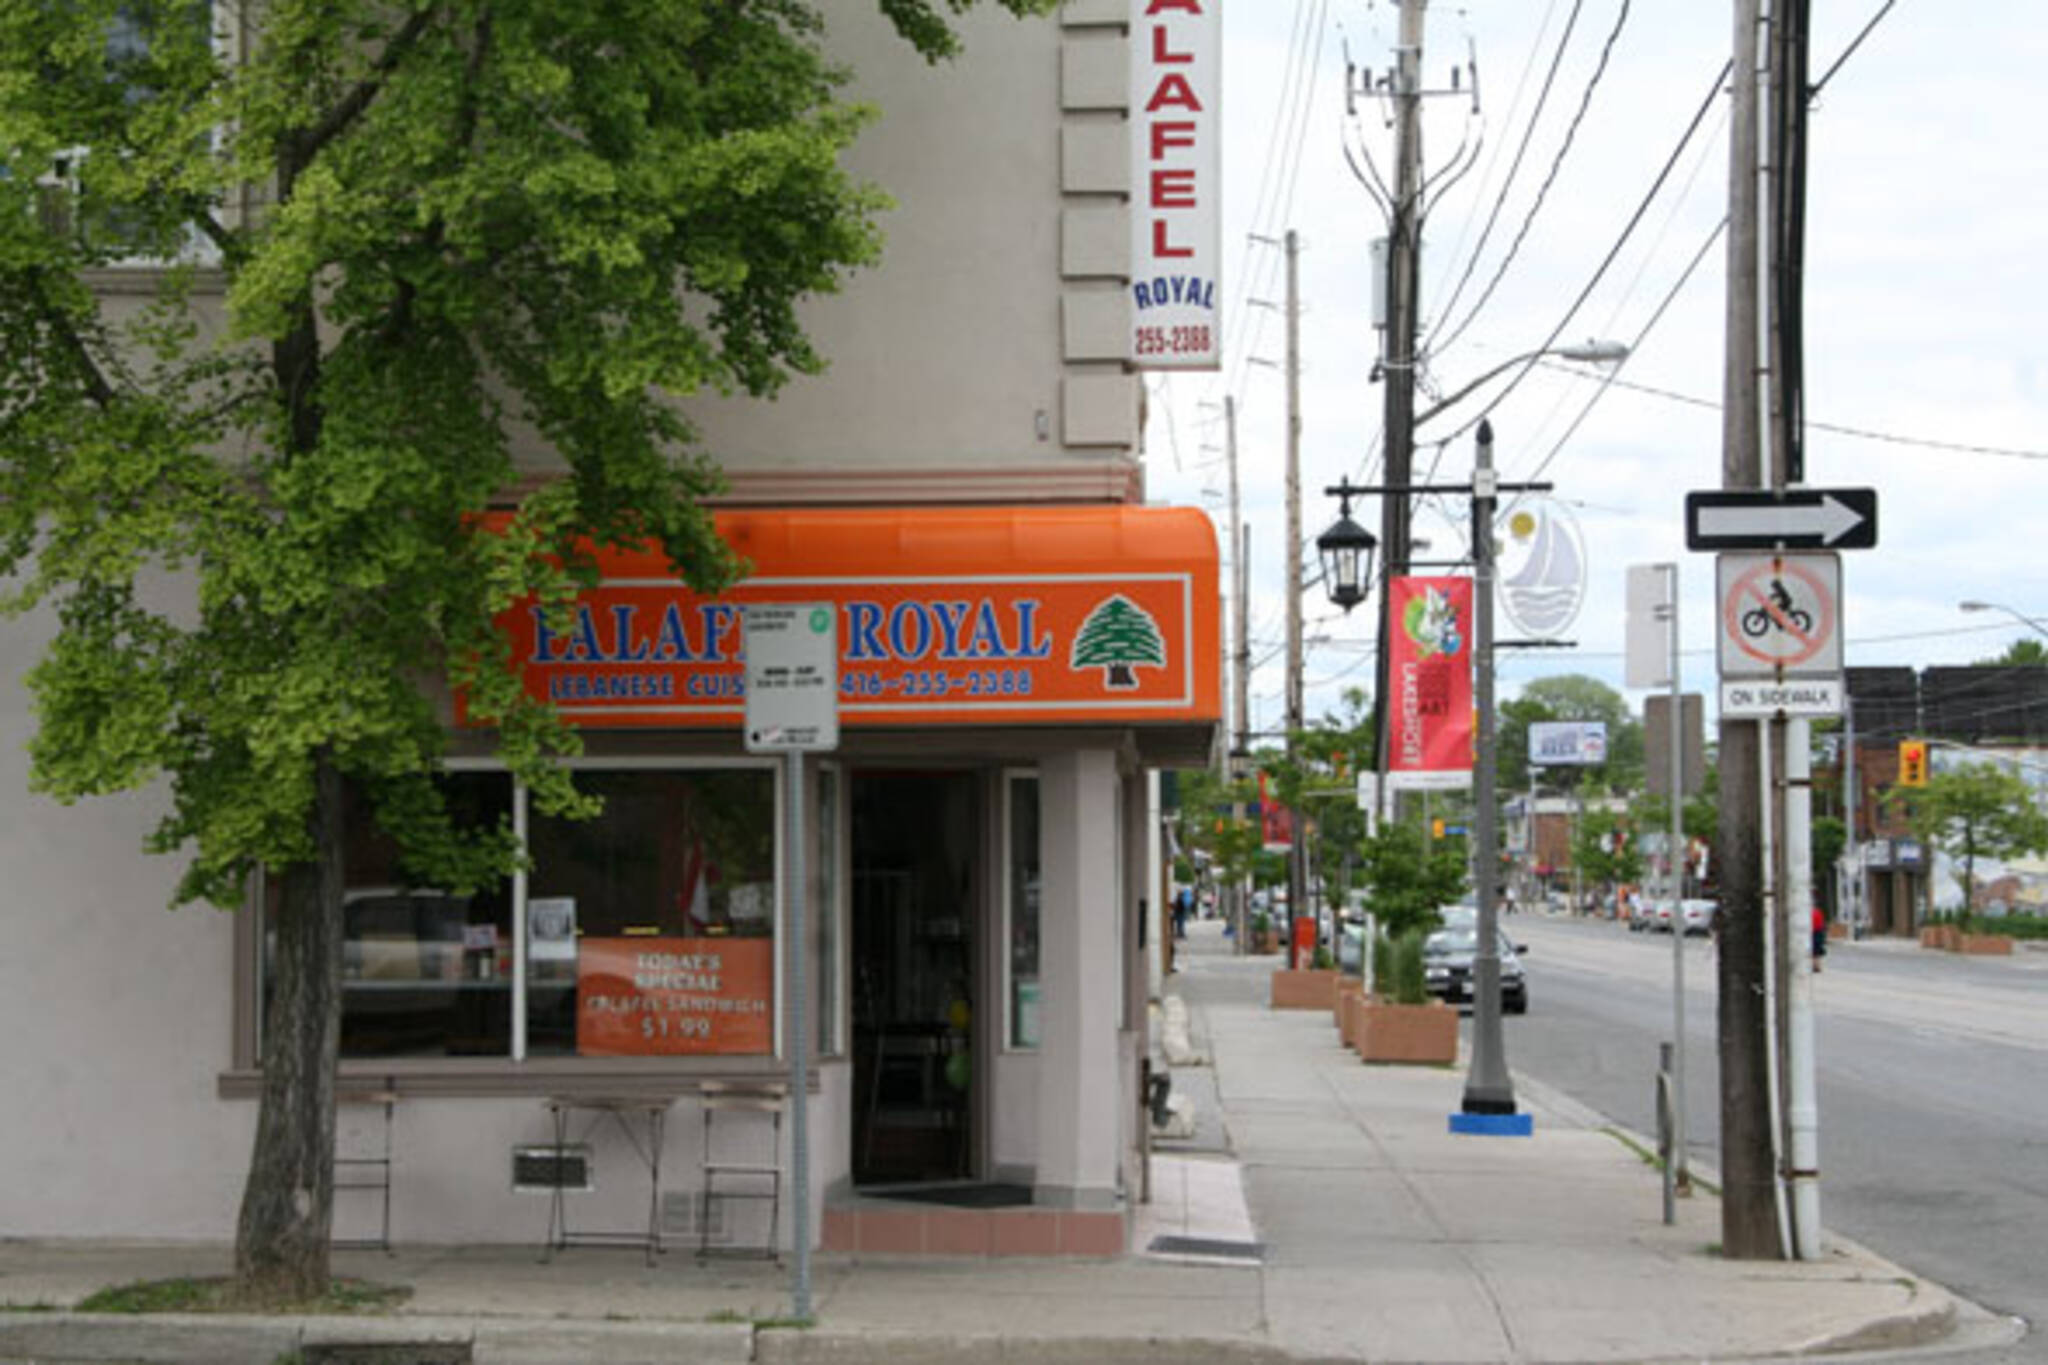 Falafel Royal Toronto